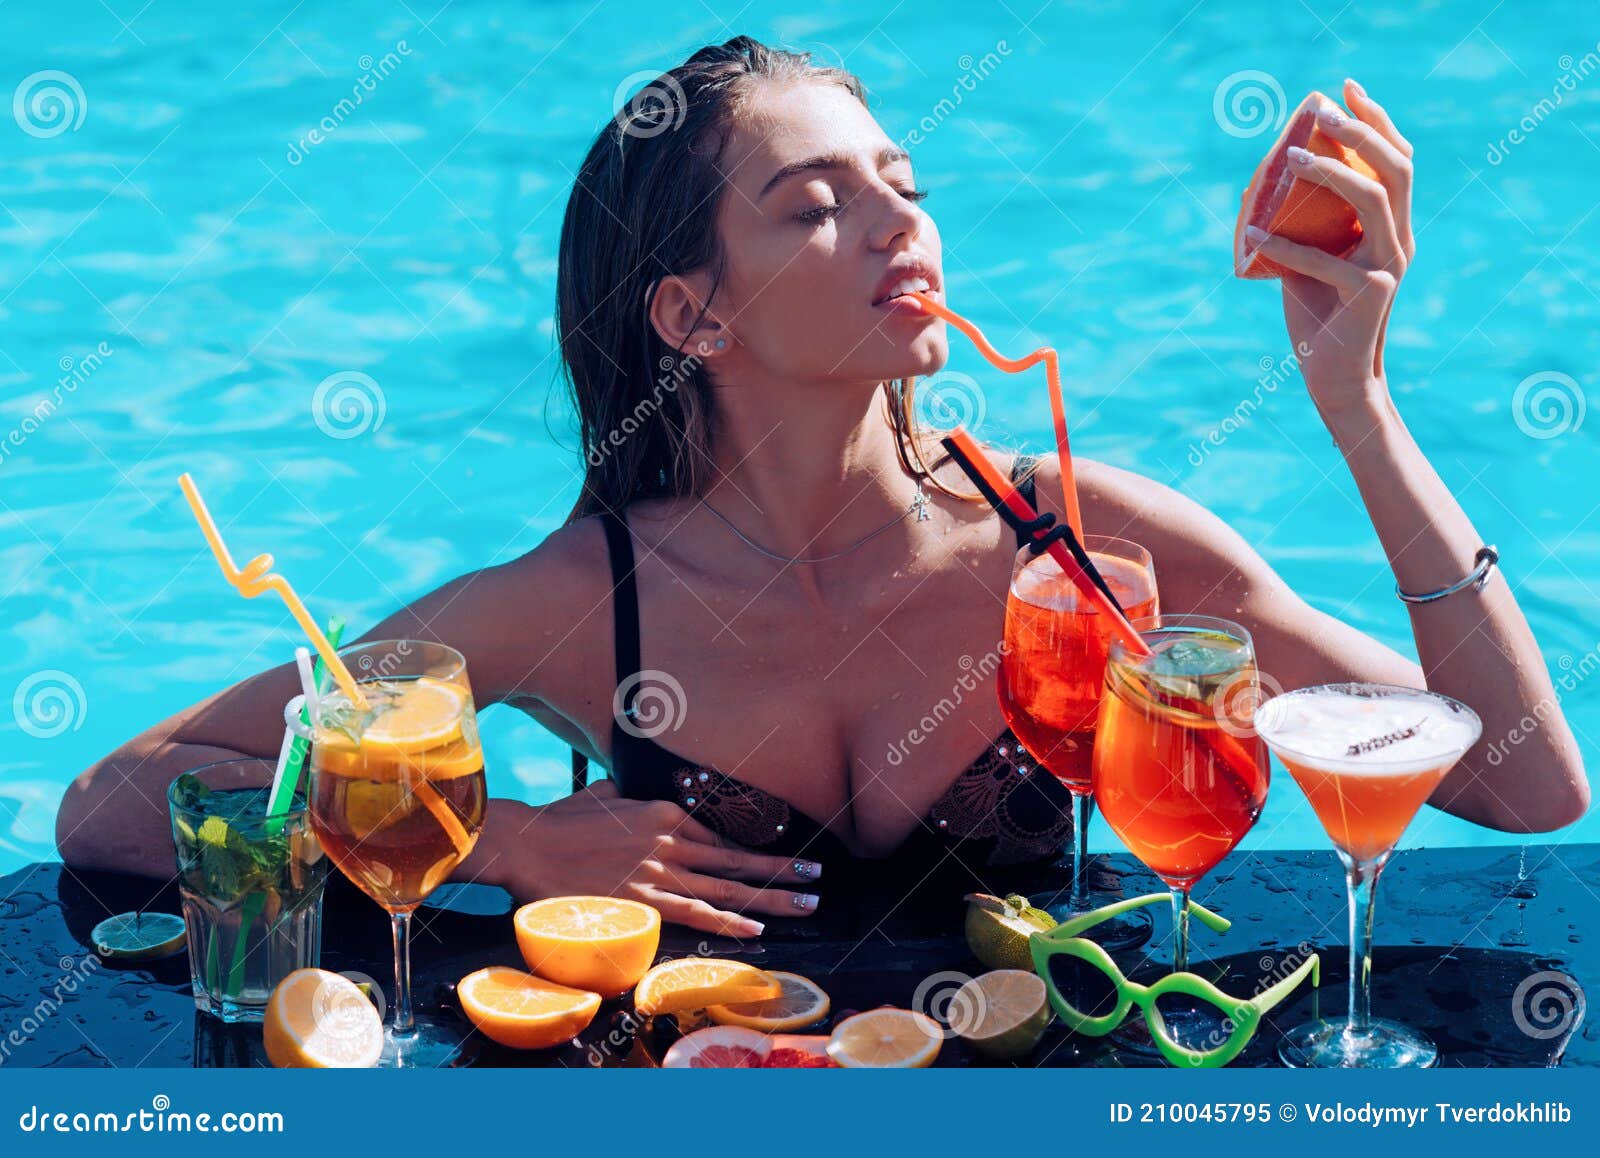 Mujer Sensual Con Pomelo. Mujer Con Cocteles. Cóctel De Bebida De Chica Mojada En La Piscina. Imagen de archivo - Imagen gente: 210045795